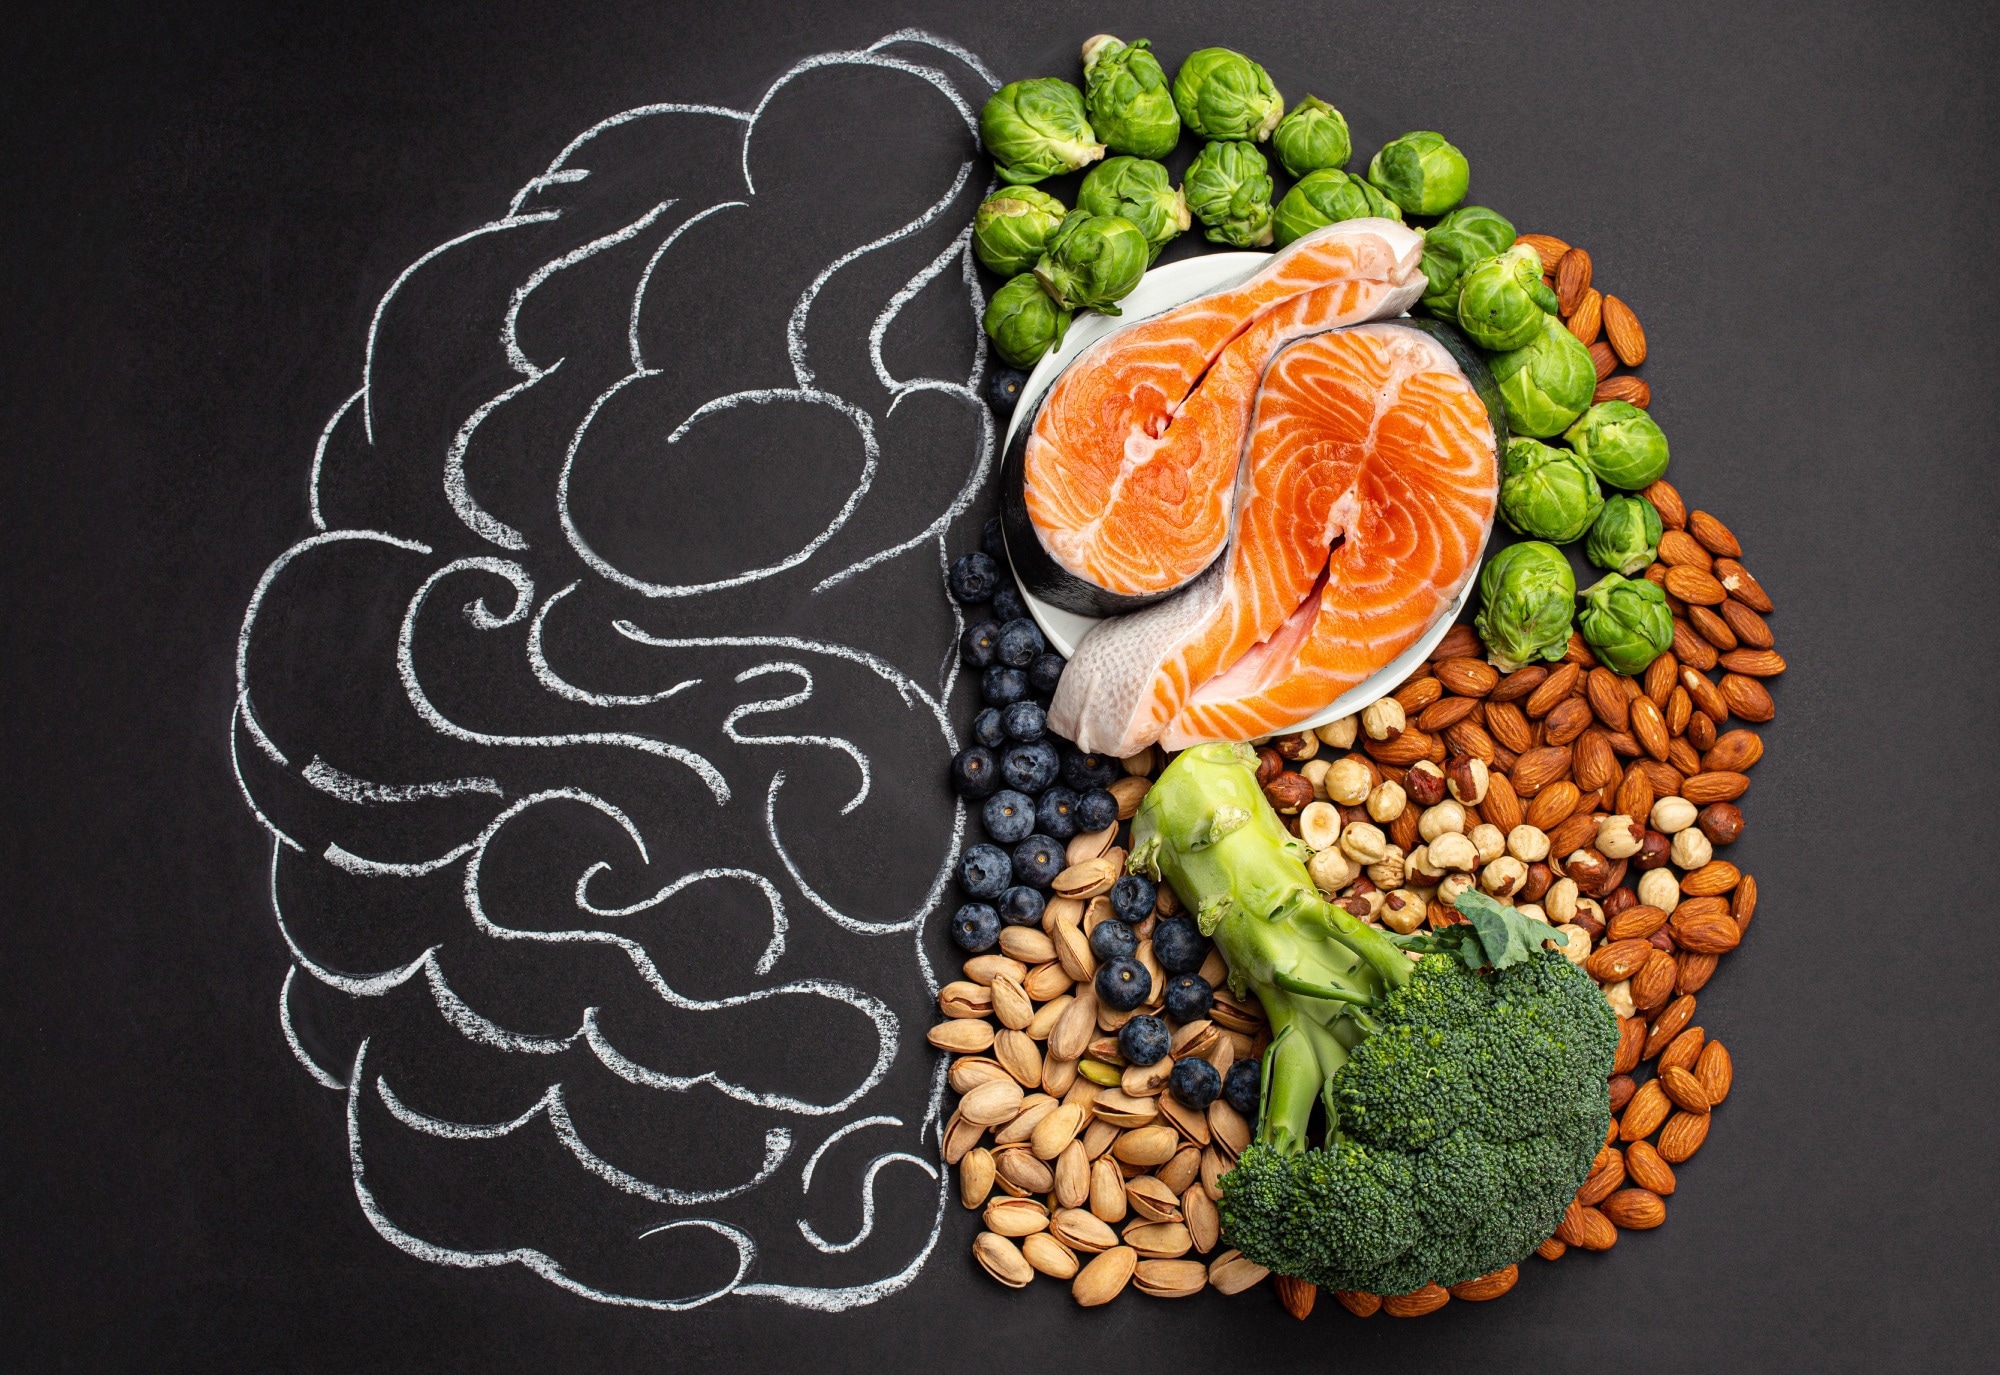 Badanie: Powiązania wzorców żywieniowych ze zdrowiem mózgu na podstawie analiz behawioralnych, neuroobrazowych, biochemicznych i genetycznych.  Źródło zdjęcia: Elena Eryomenko / Shutterstock